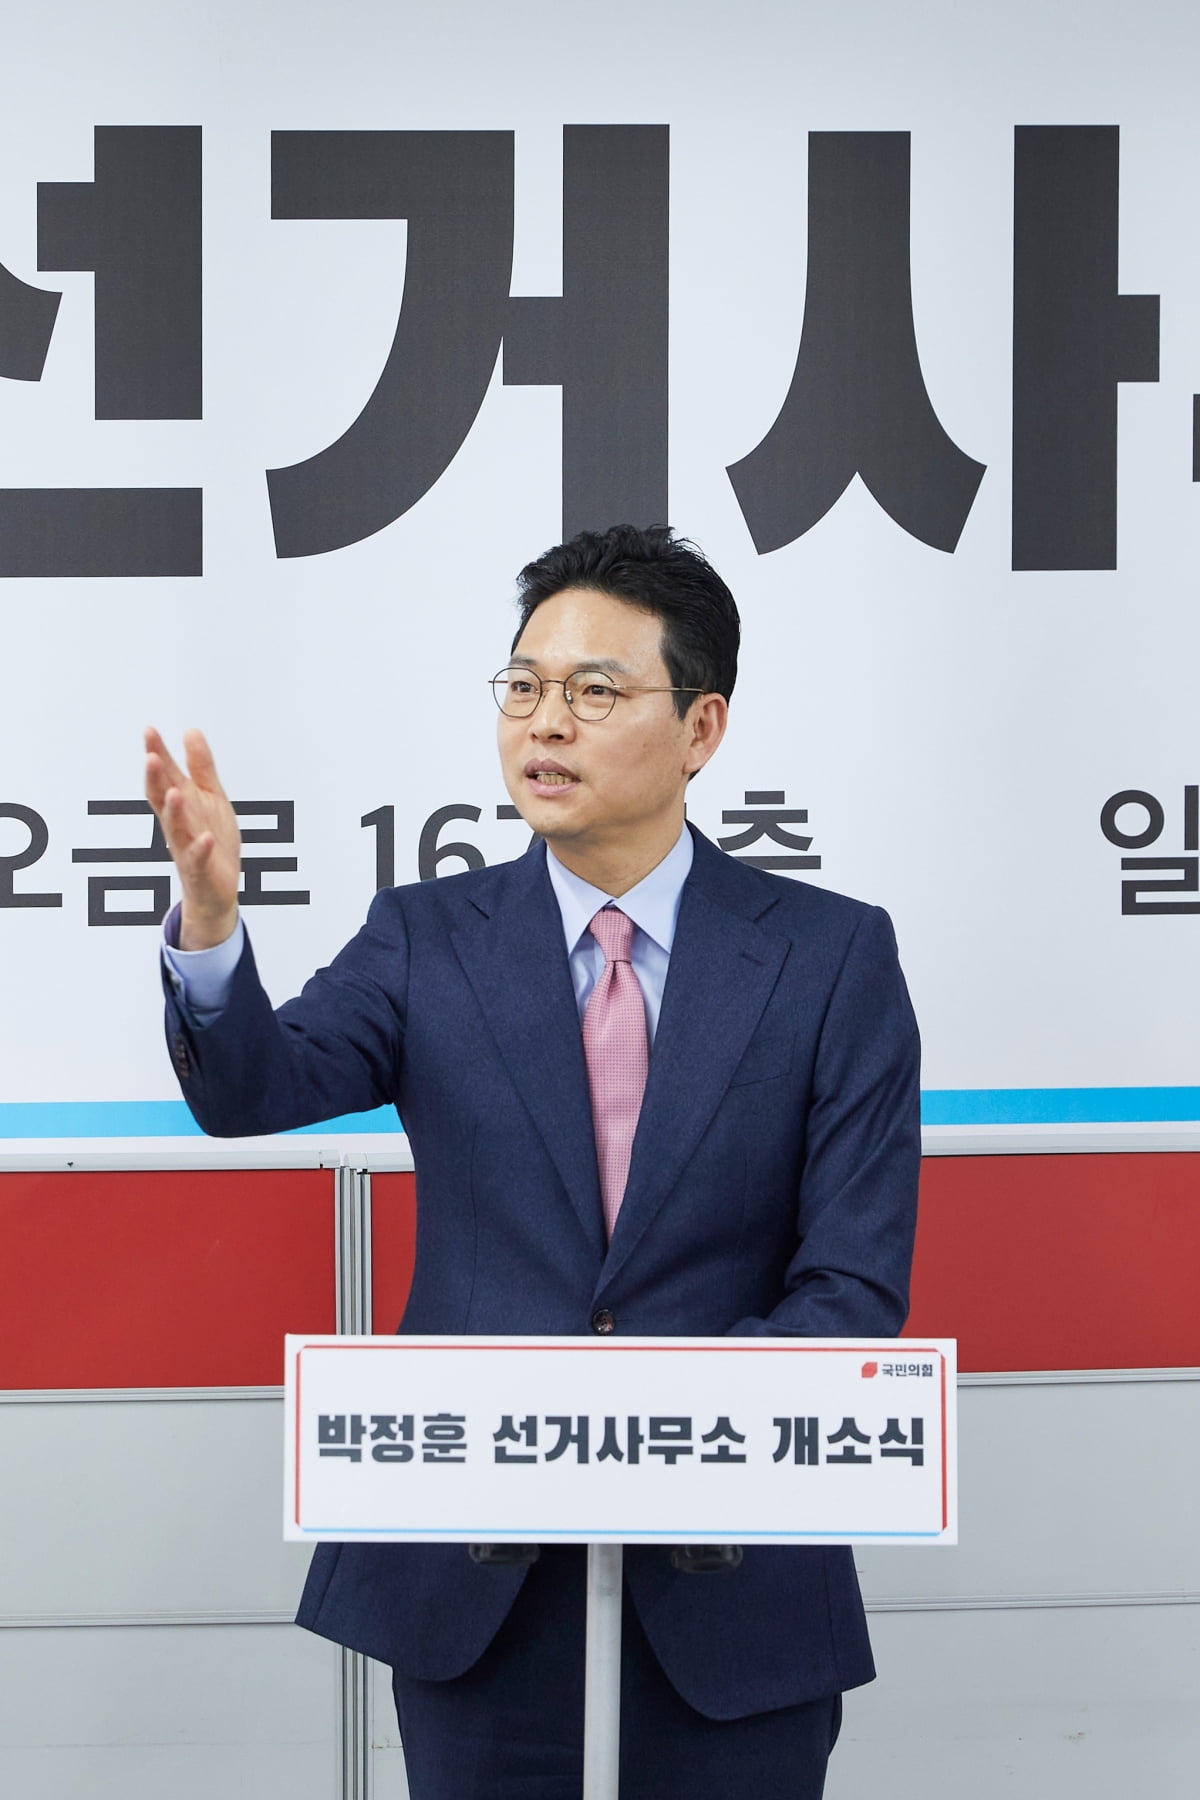 박정훈 송파갑 후보가 지난 1월 27일 선거사무소 개소식에서 발언하고 있다.